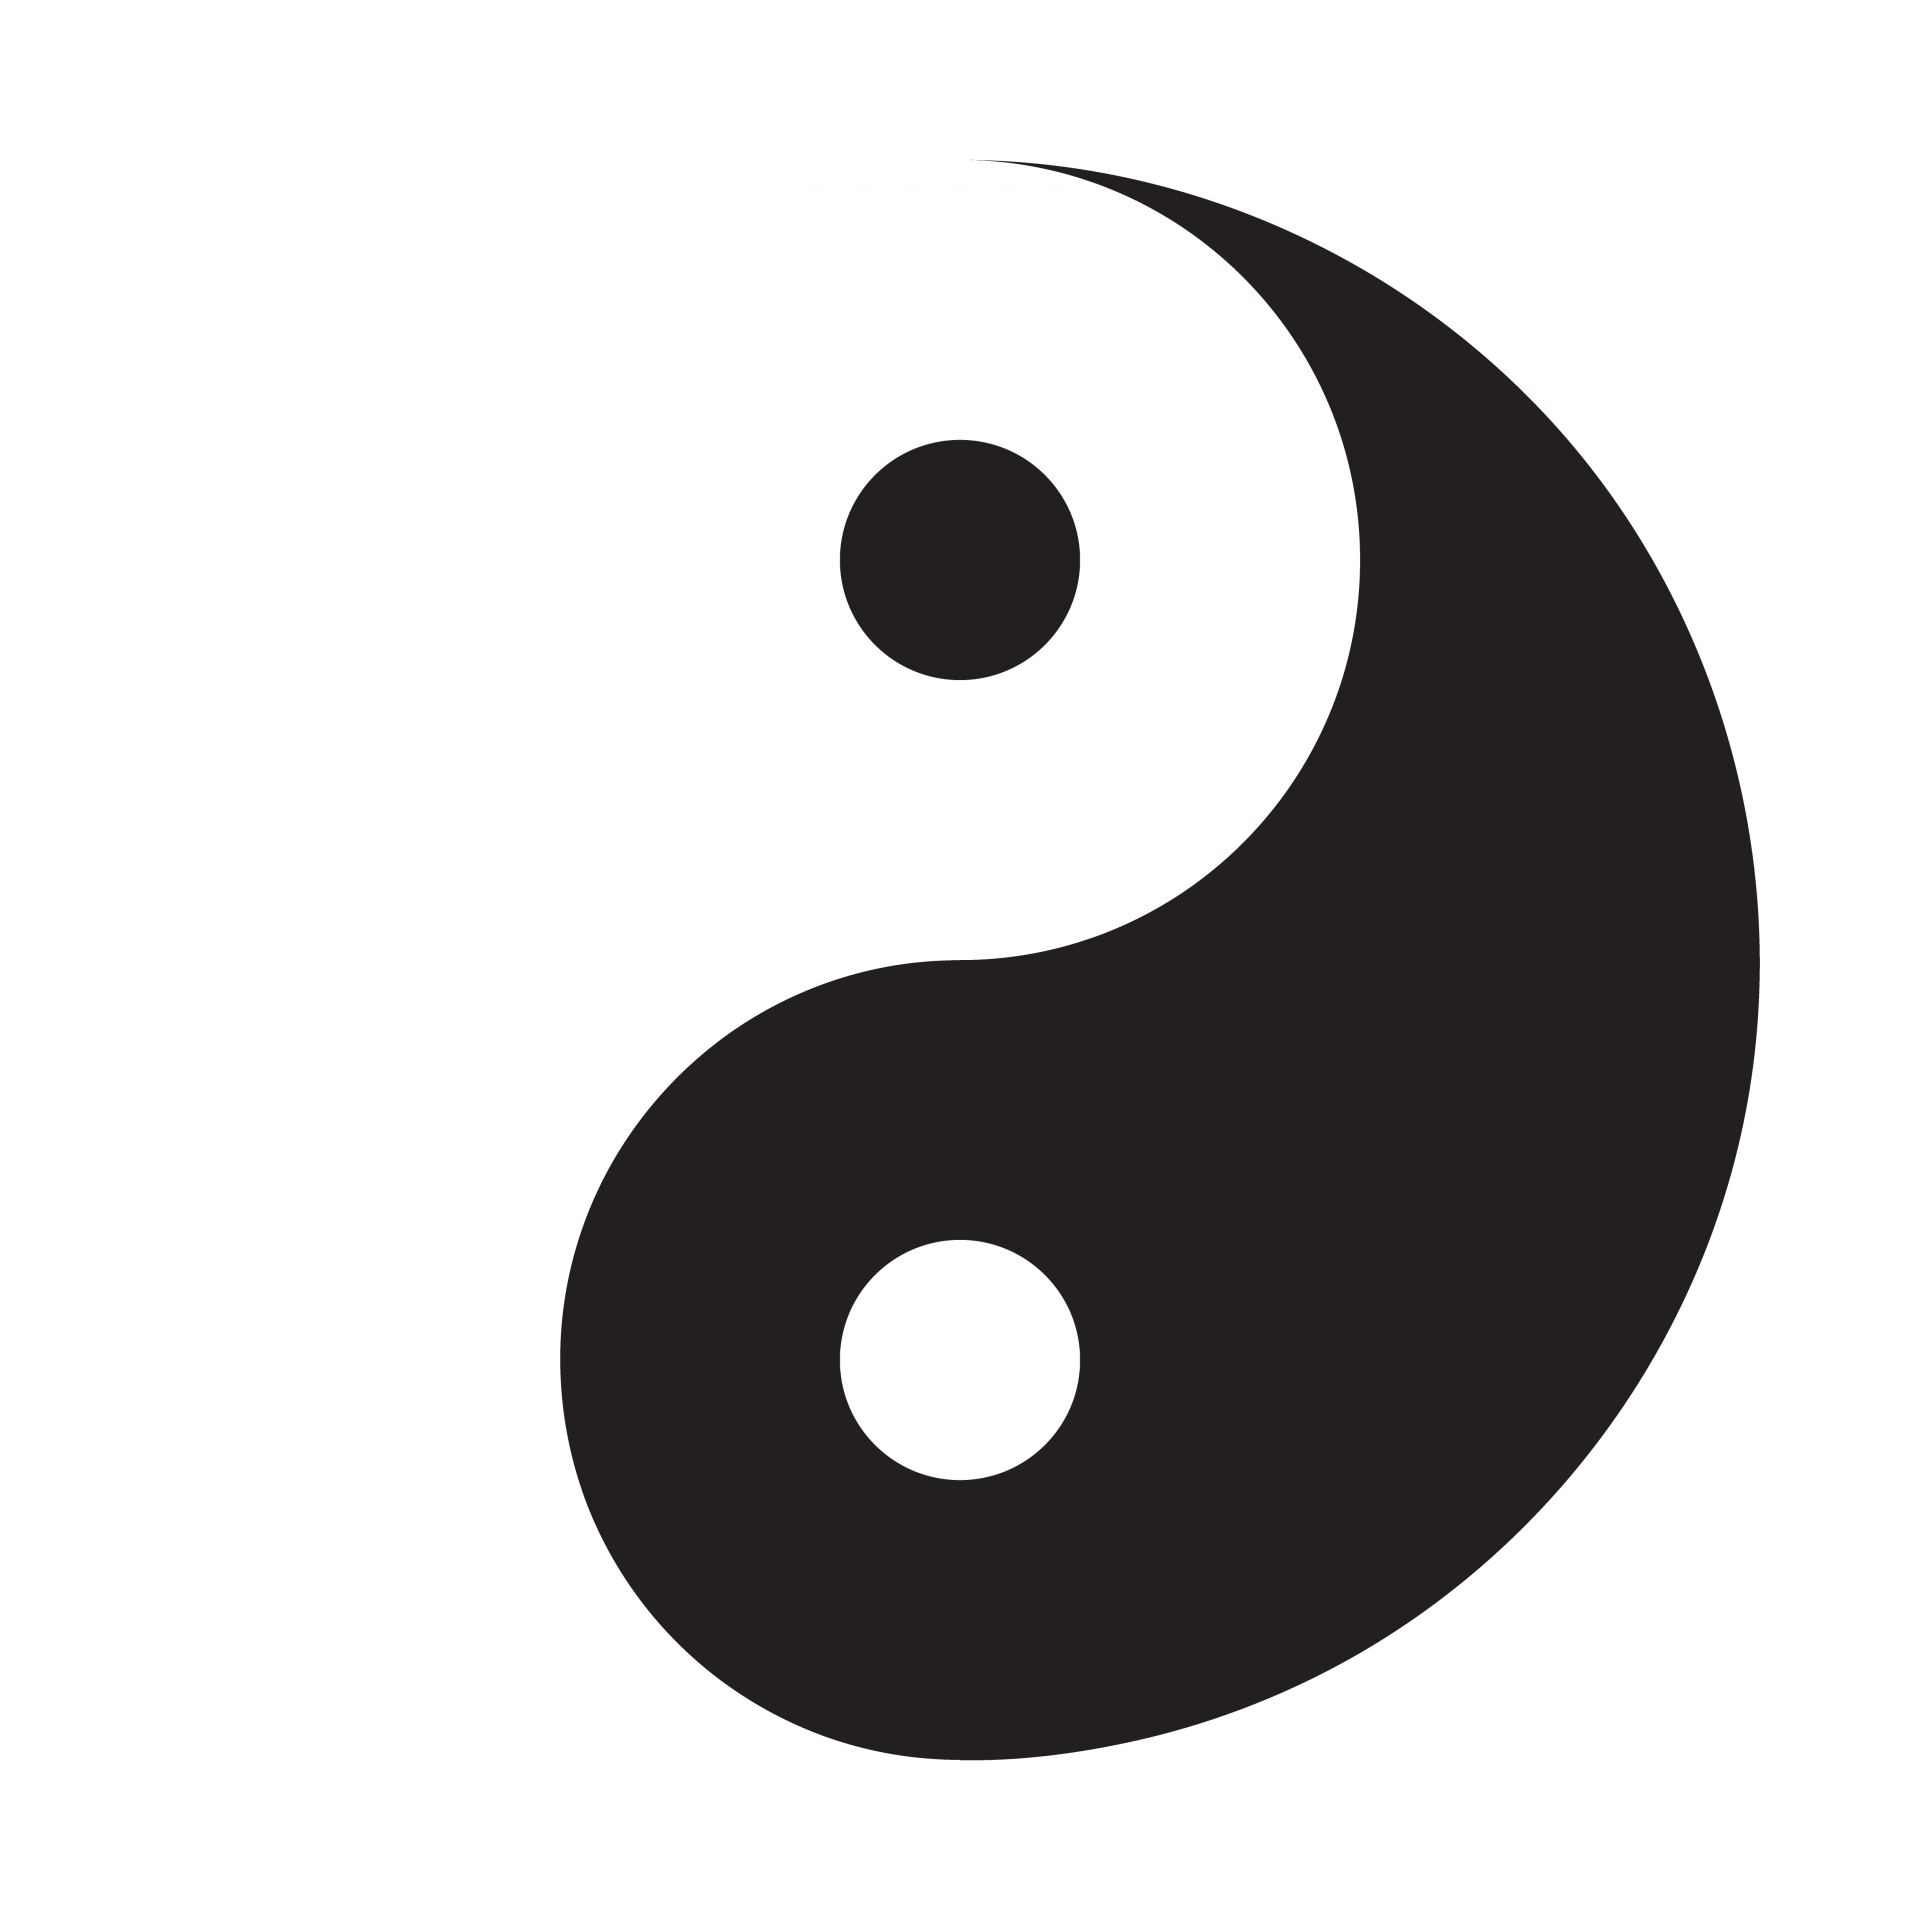 Symbole Yin Yang Photo stock libre - Public Domain Pictures